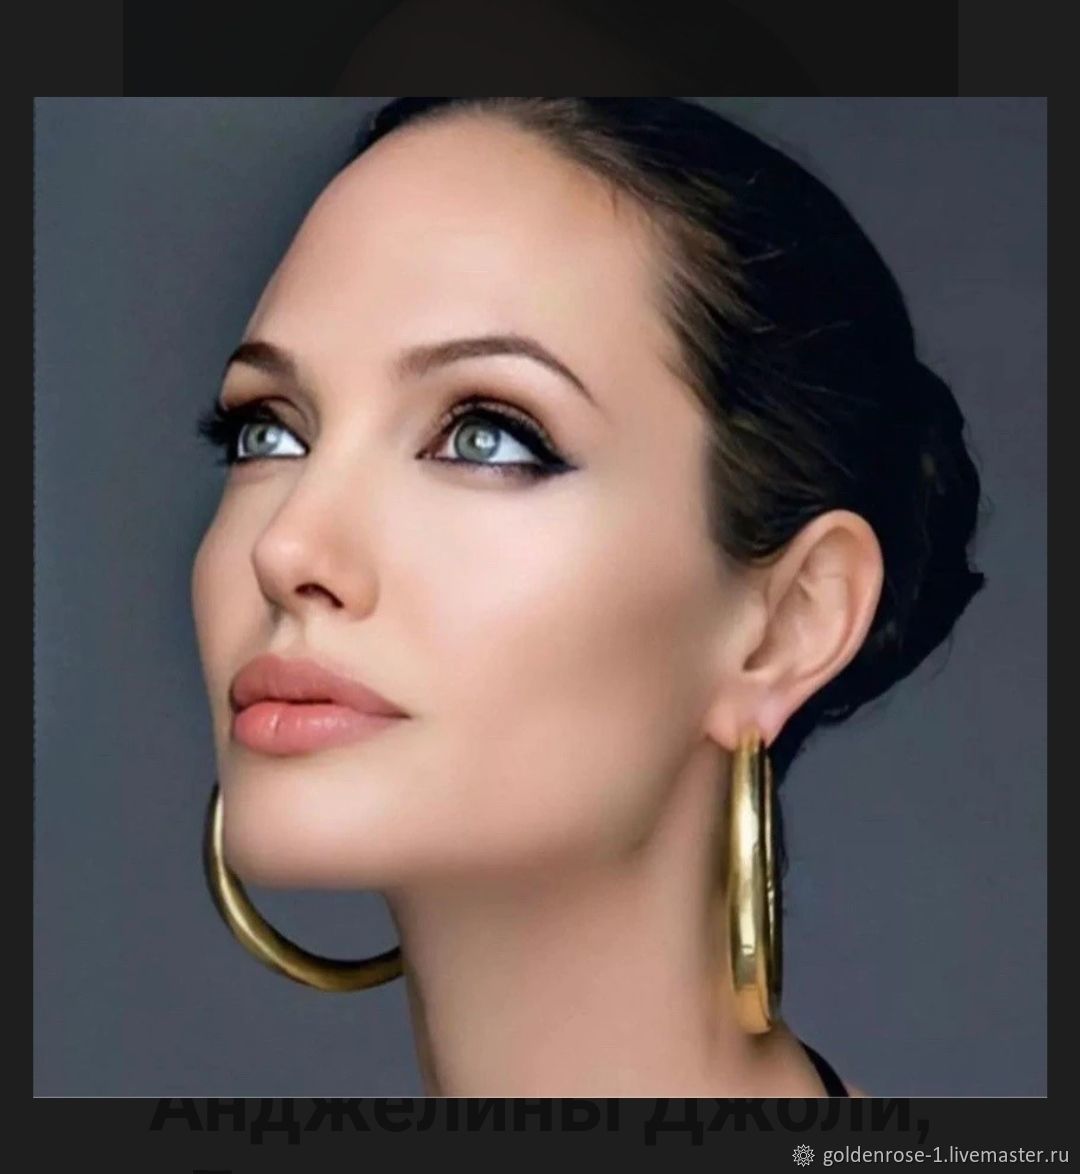 Коллекция украшений Анджелины Джоли выставлена на продажу (фото) - Культура | Караван